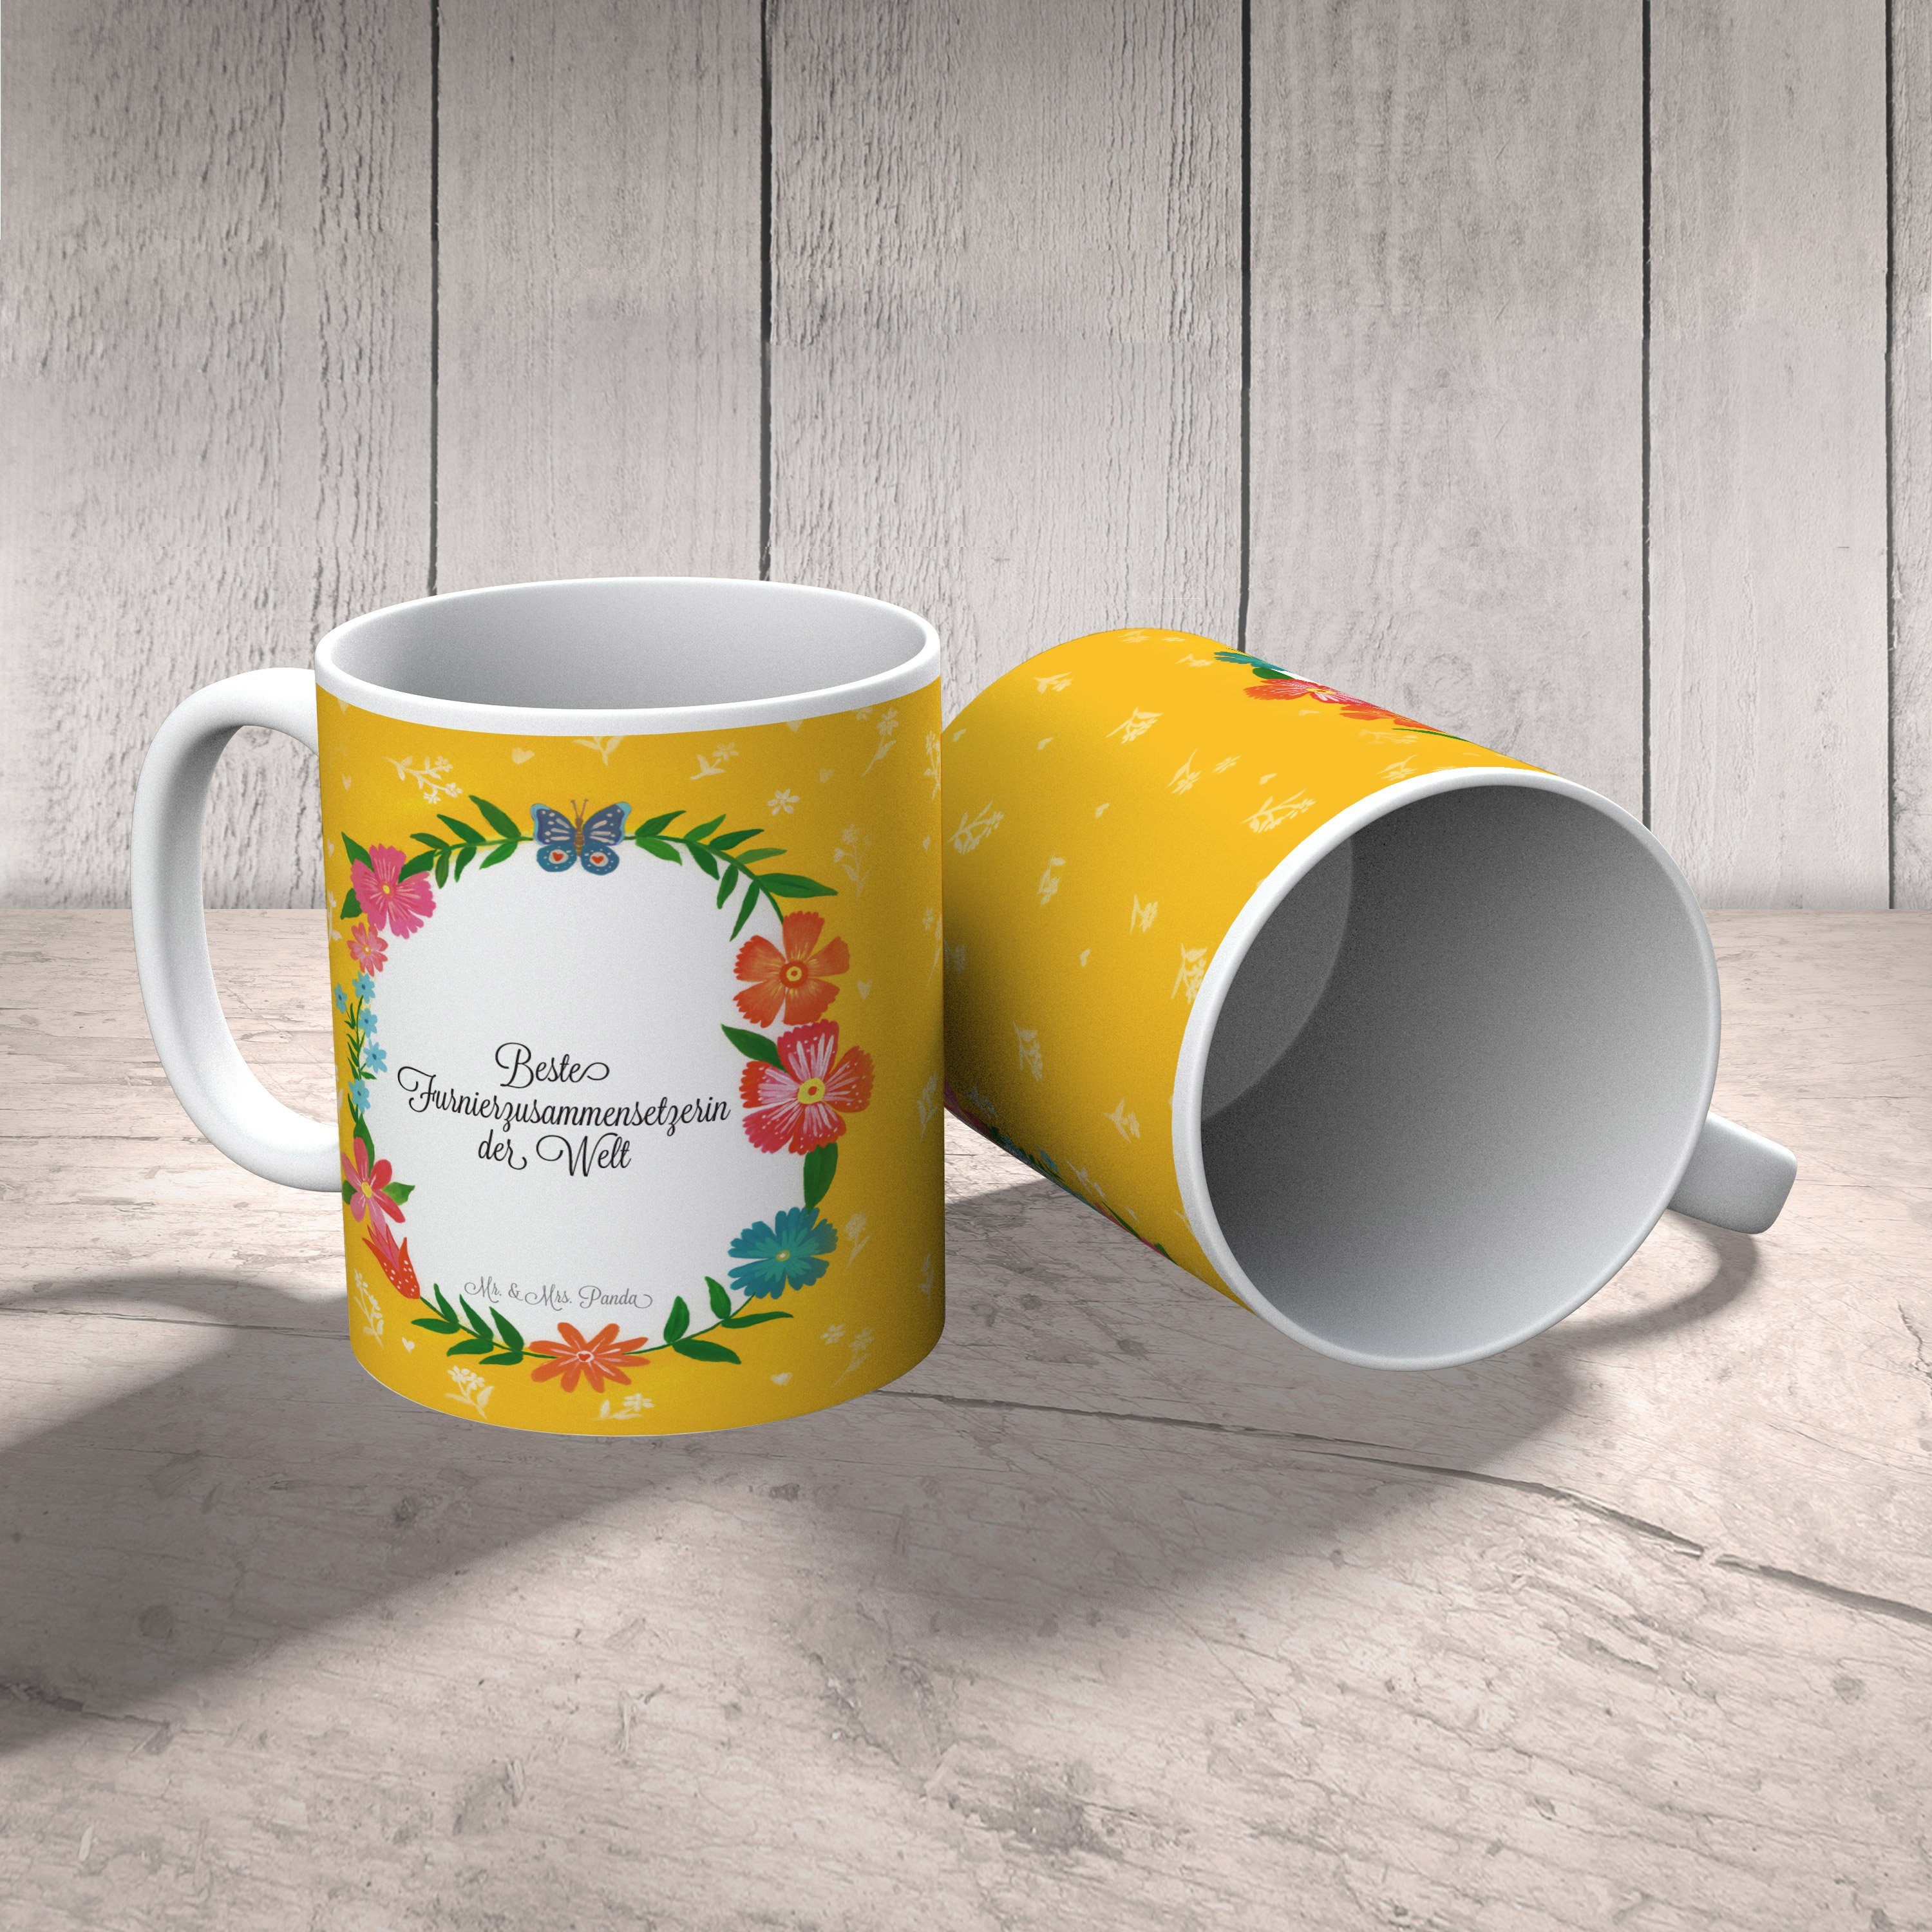 Mr. & Mrs. Tasse Geschenk, Tasse Keramik Abschied, - Kaffeebec, Panda Motive, Furnierzusammensetzerin